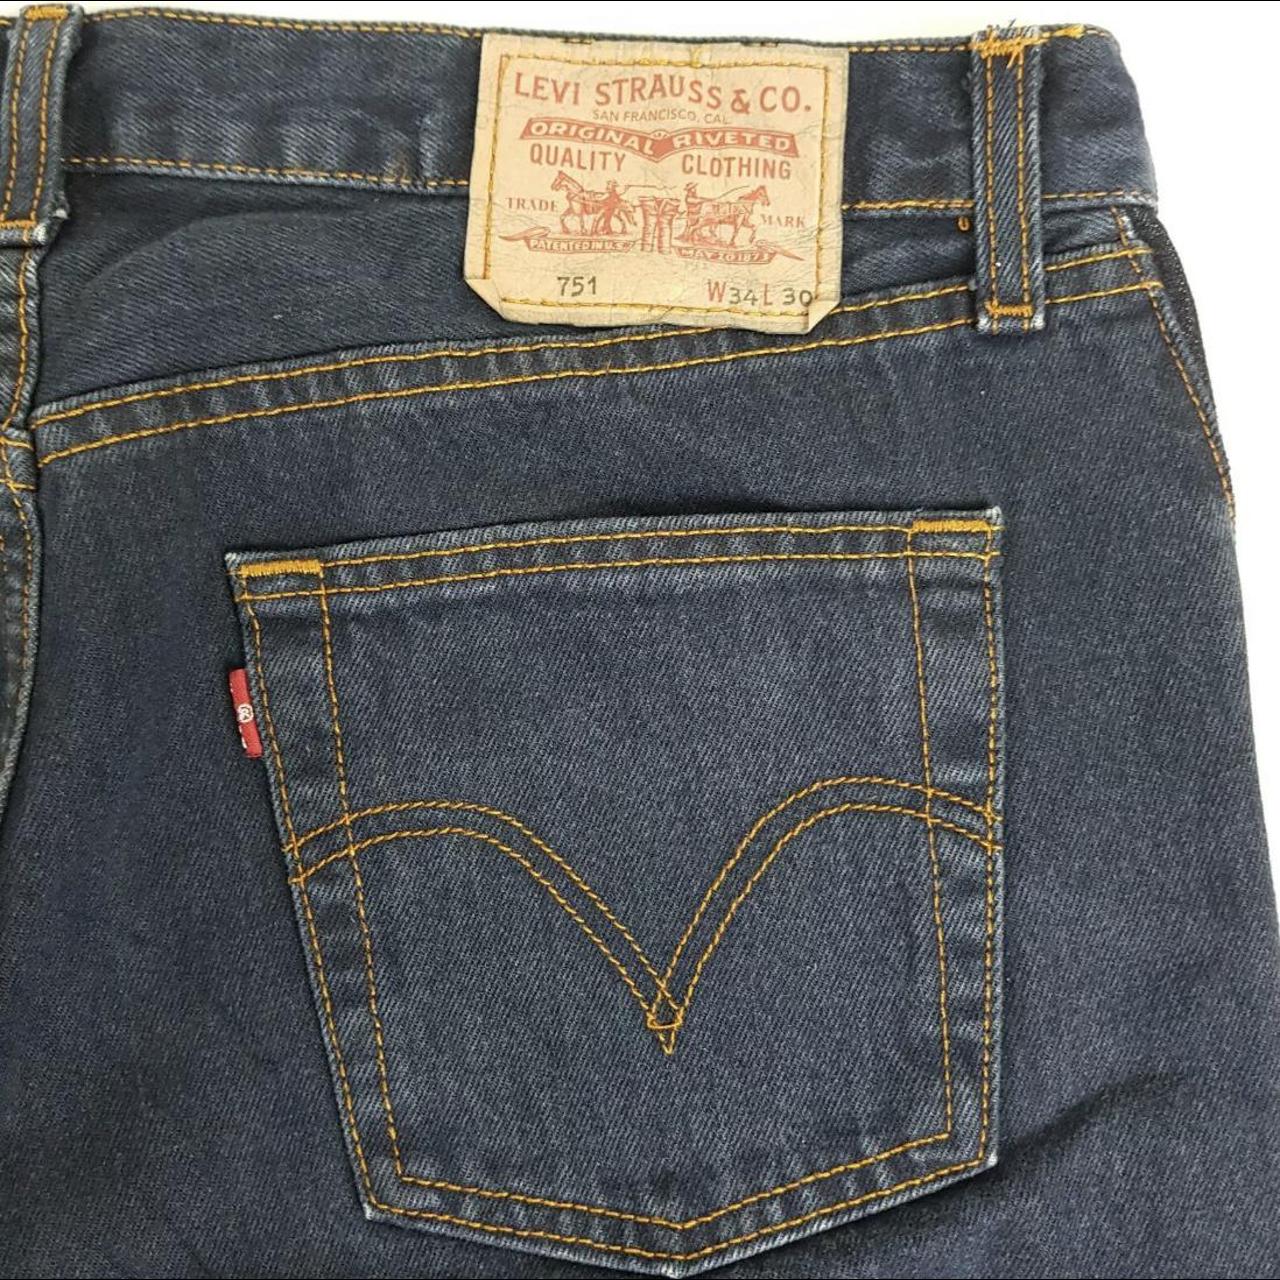 Levi’s 751 vintage denim jeans W34 L30 - Depop